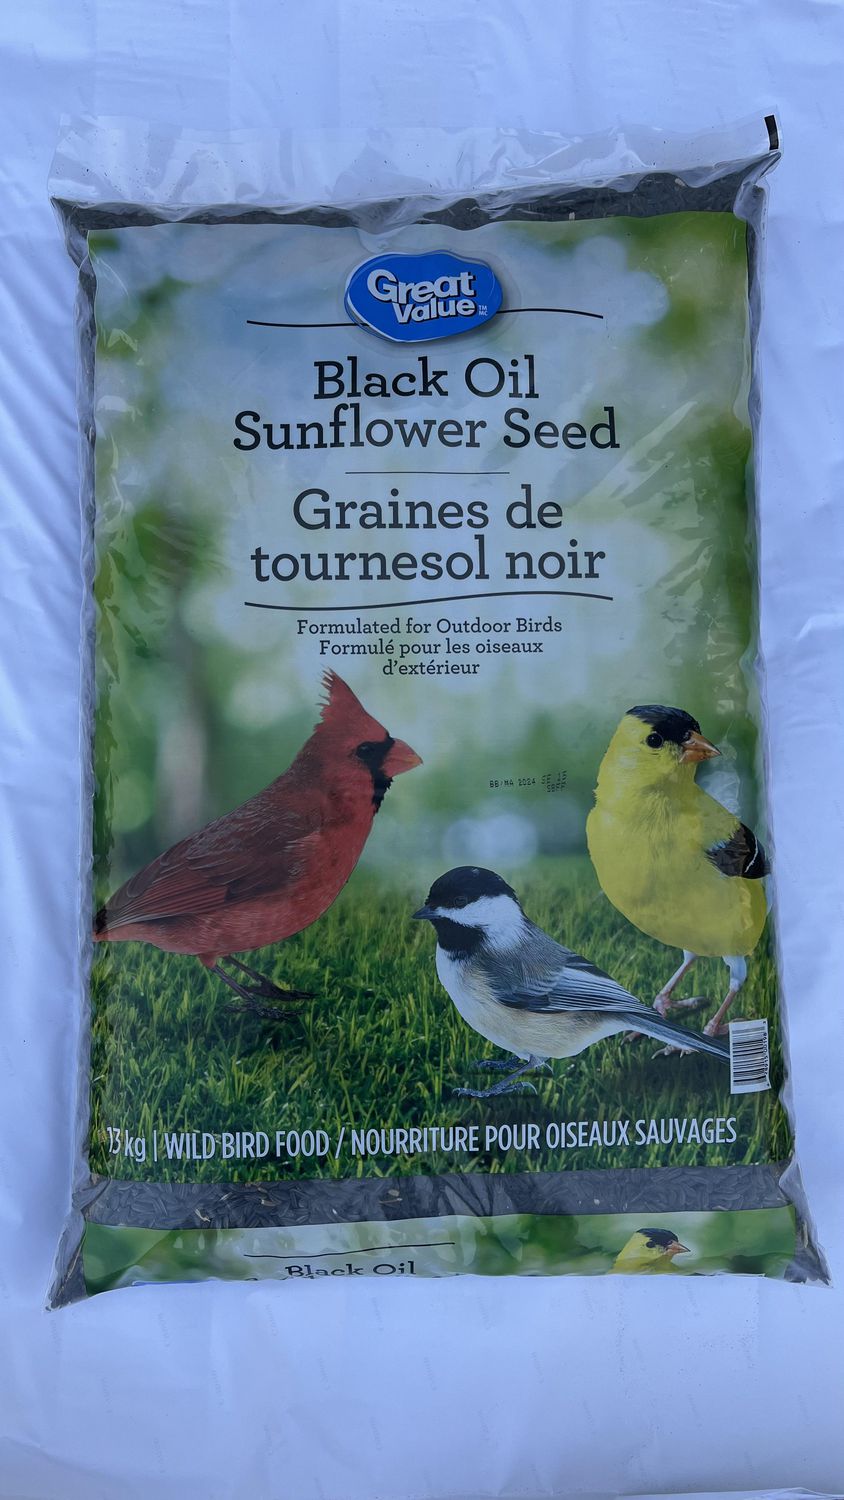 Nourriture pour oiseaux sauvages graines de tournesol noir Great